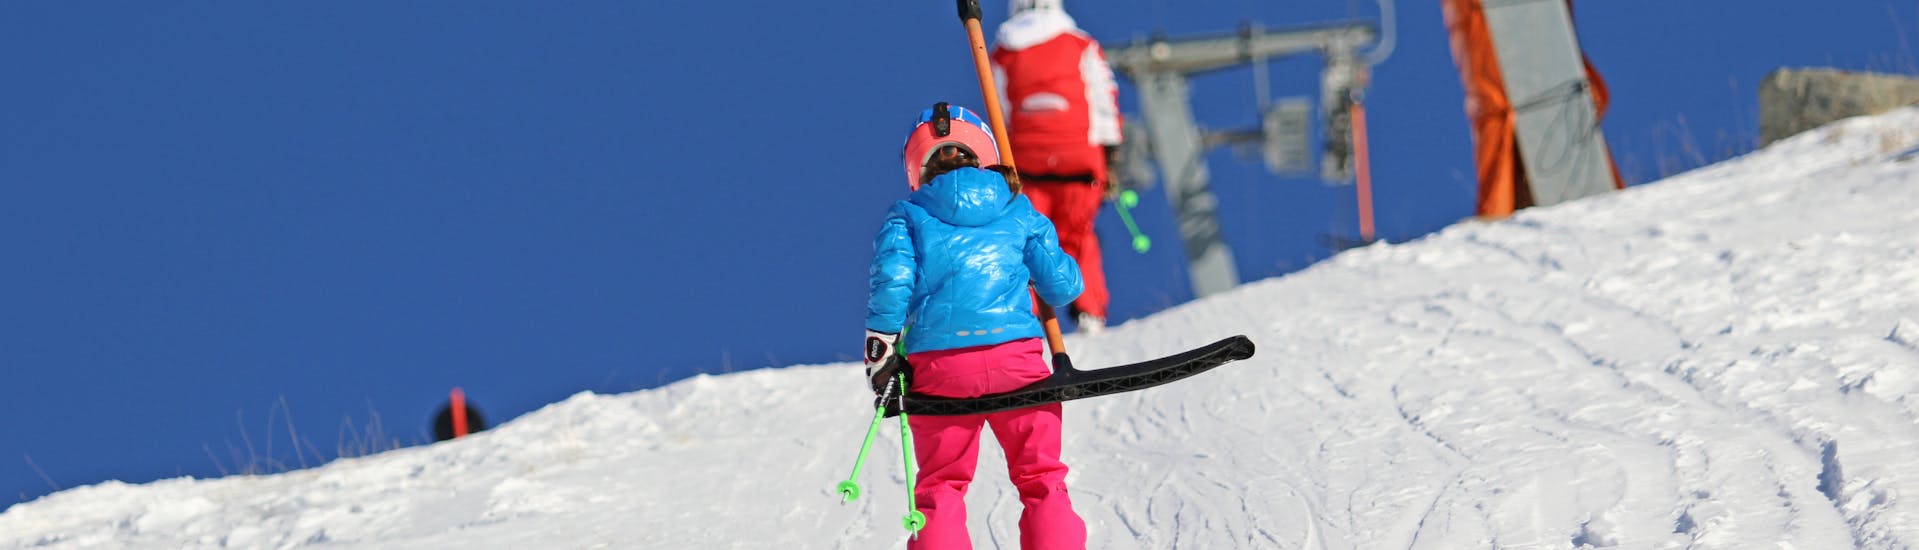 Skilessen voor Kinderen (4-14 jaar) + Skiverhuur voor Beginners - Nauders.